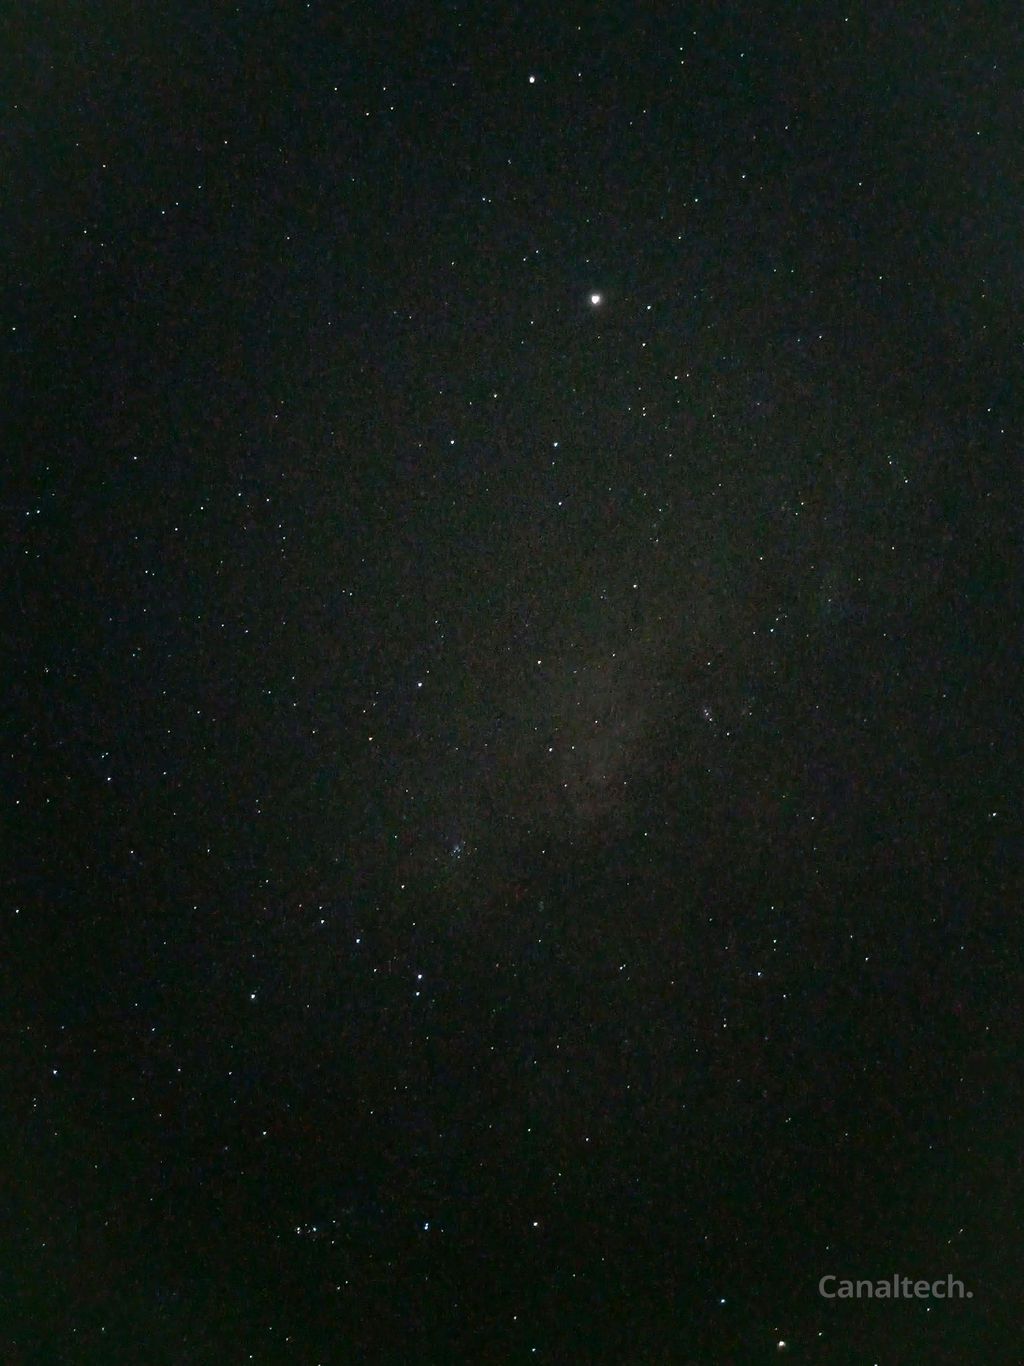 A "mancha" na no centro imagem é, na verdade, a região mais iluminada da Via Láctea no céu noturno, registrada por um celular. O ponto brilhante em destaque é o planeta Saturno (Imagem: Reprodução/Wyllian Torres)